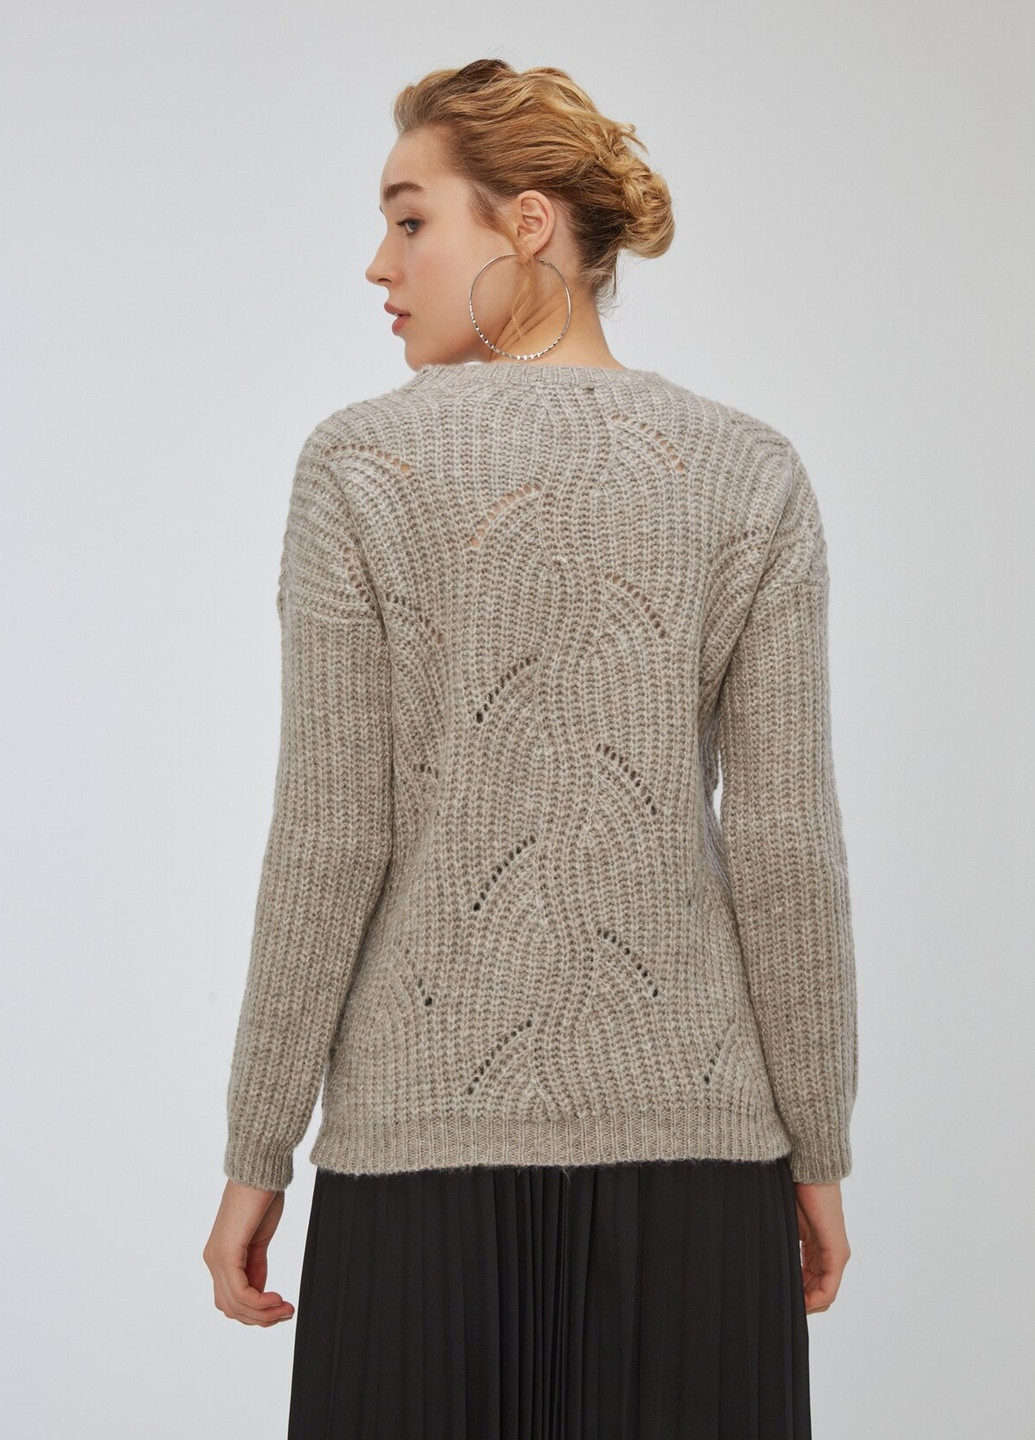 Серо-бежевый демисезонный свитер женский свободного кроя пуловер Nobrend